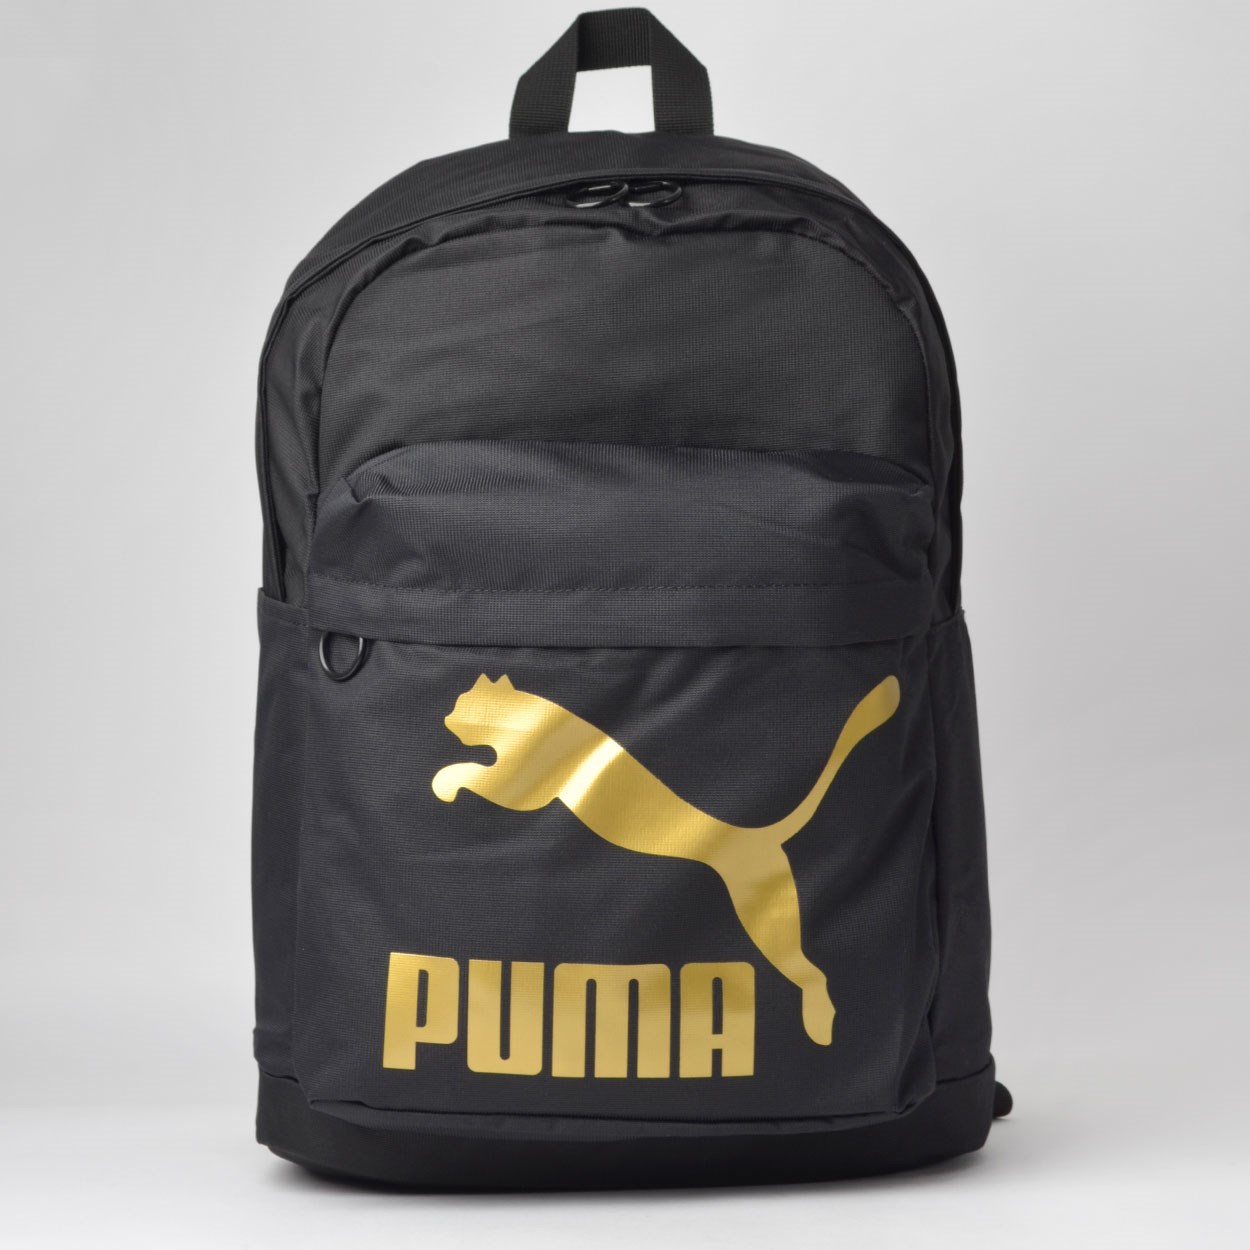 mochila puma originals backpack